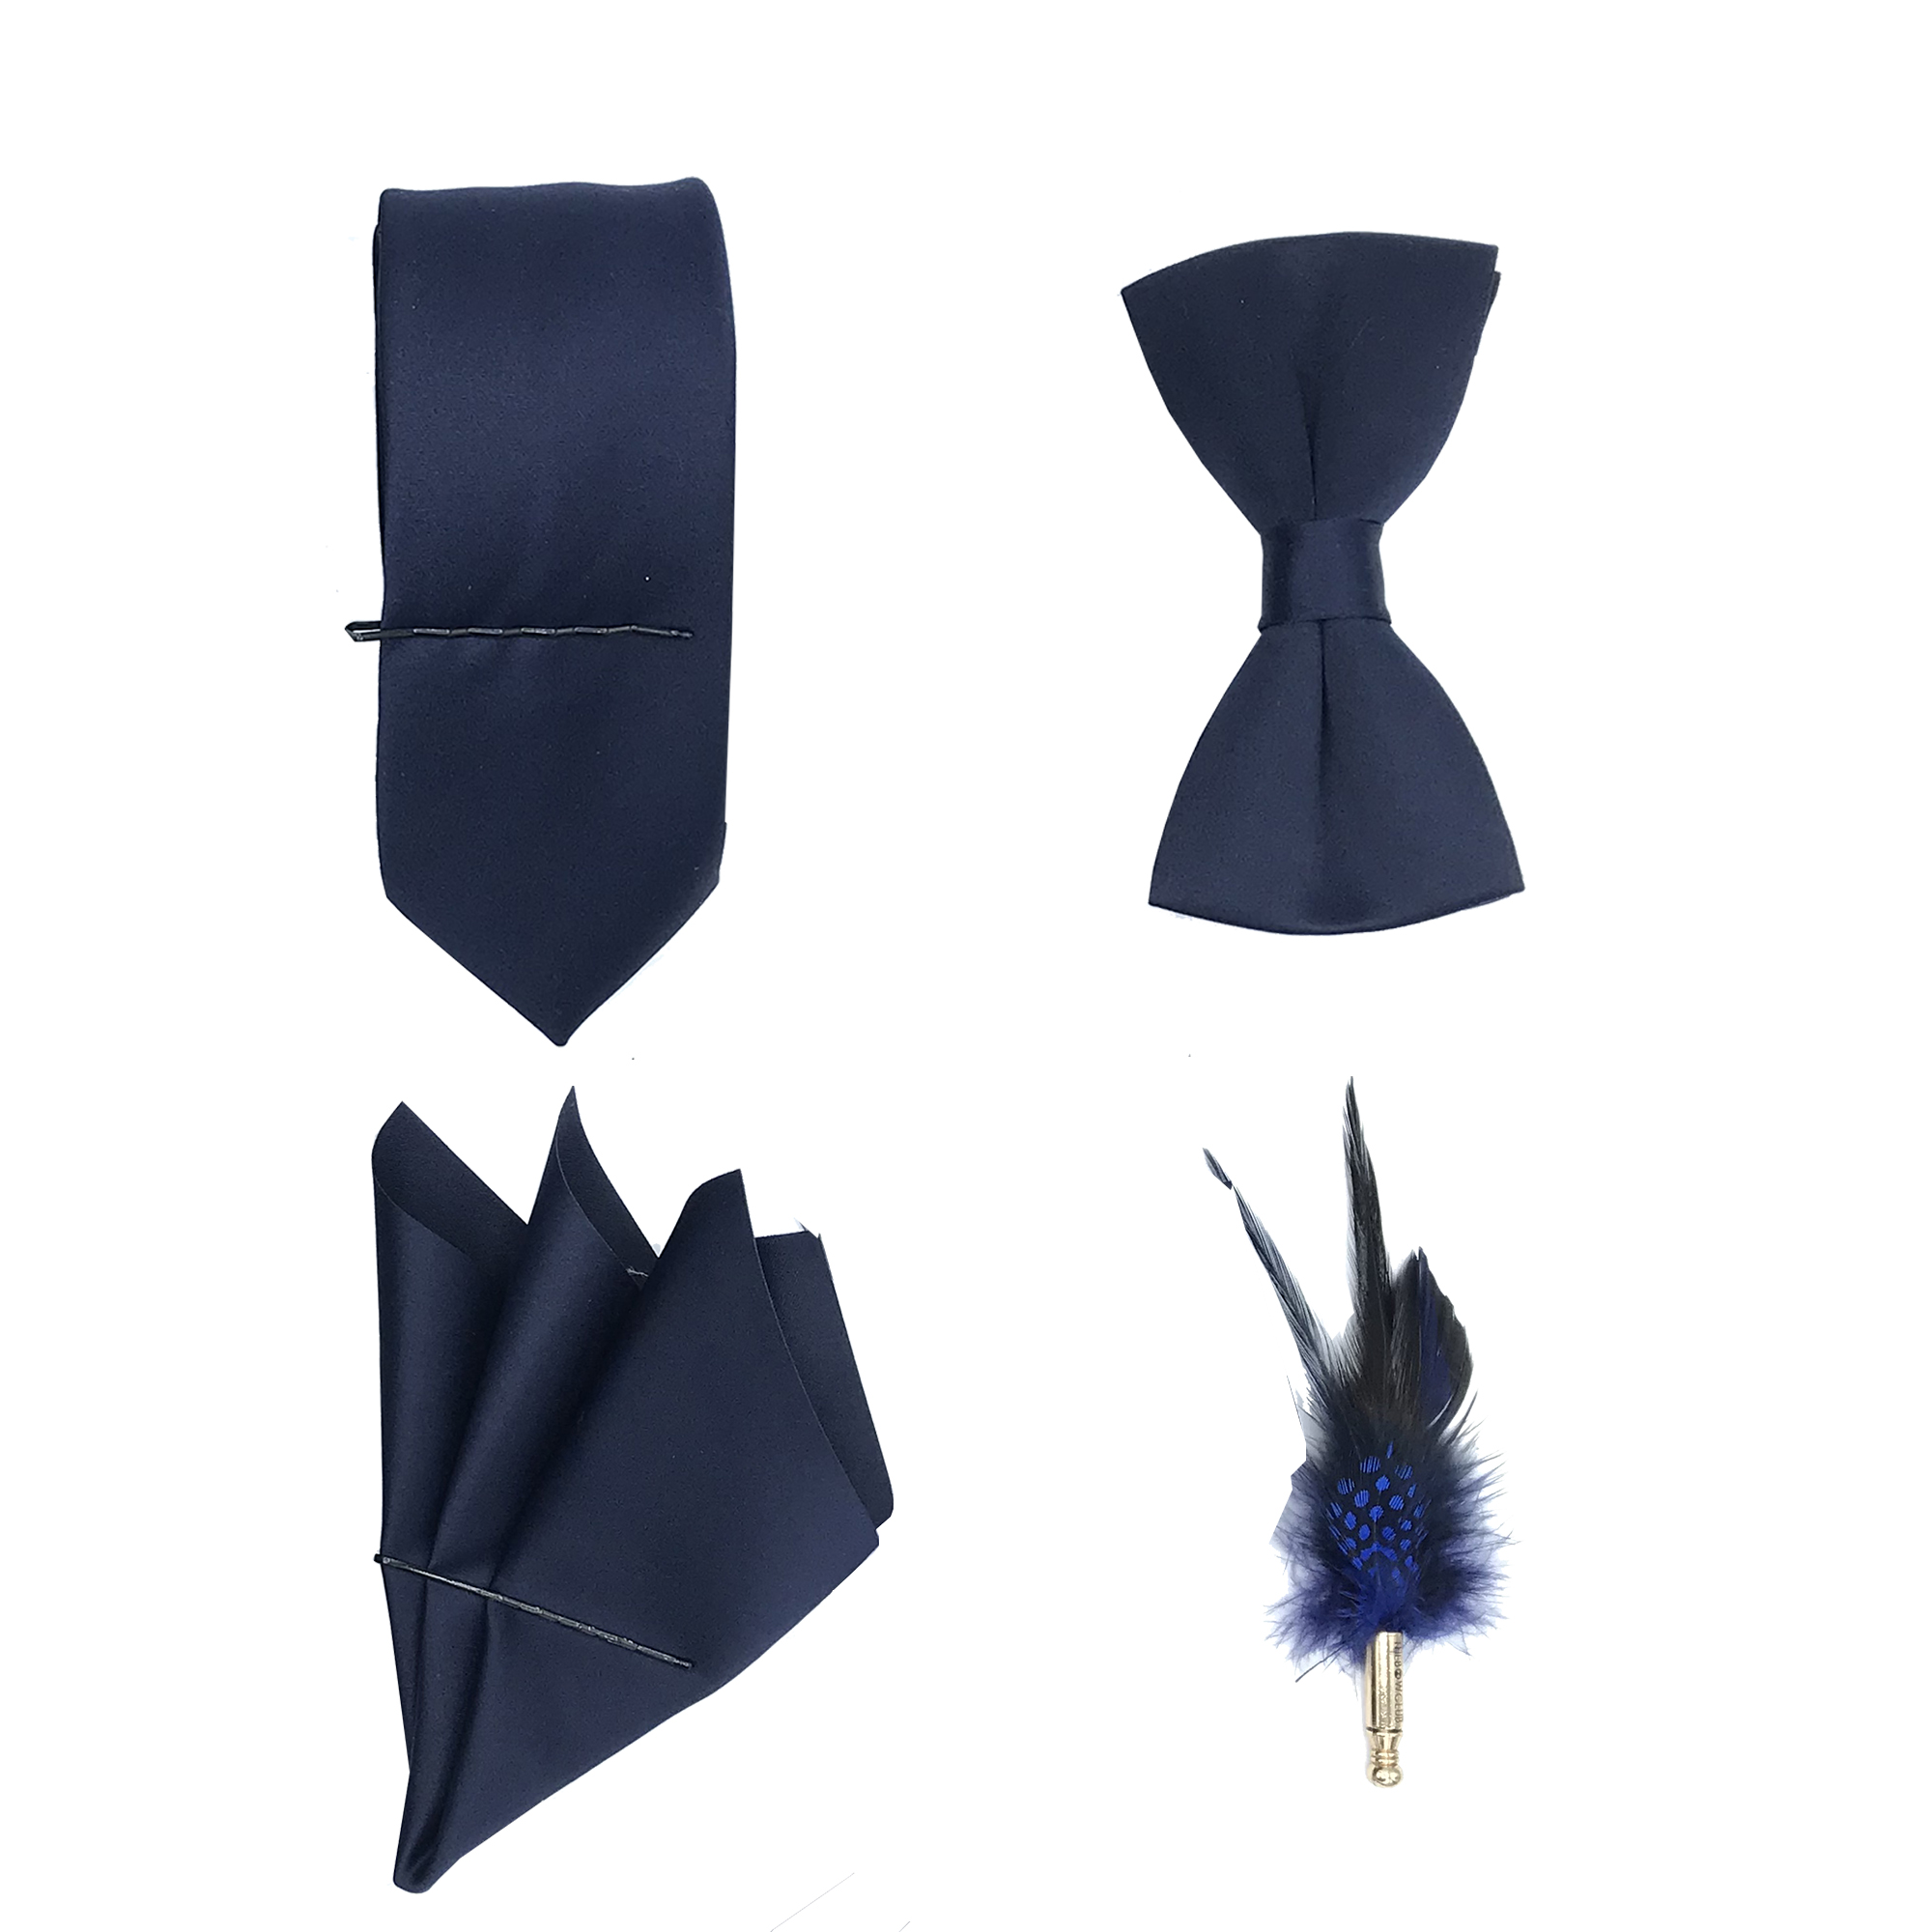 ست کراوات پاپیون دستمال جیب و گل کت مدل KPDG-1002